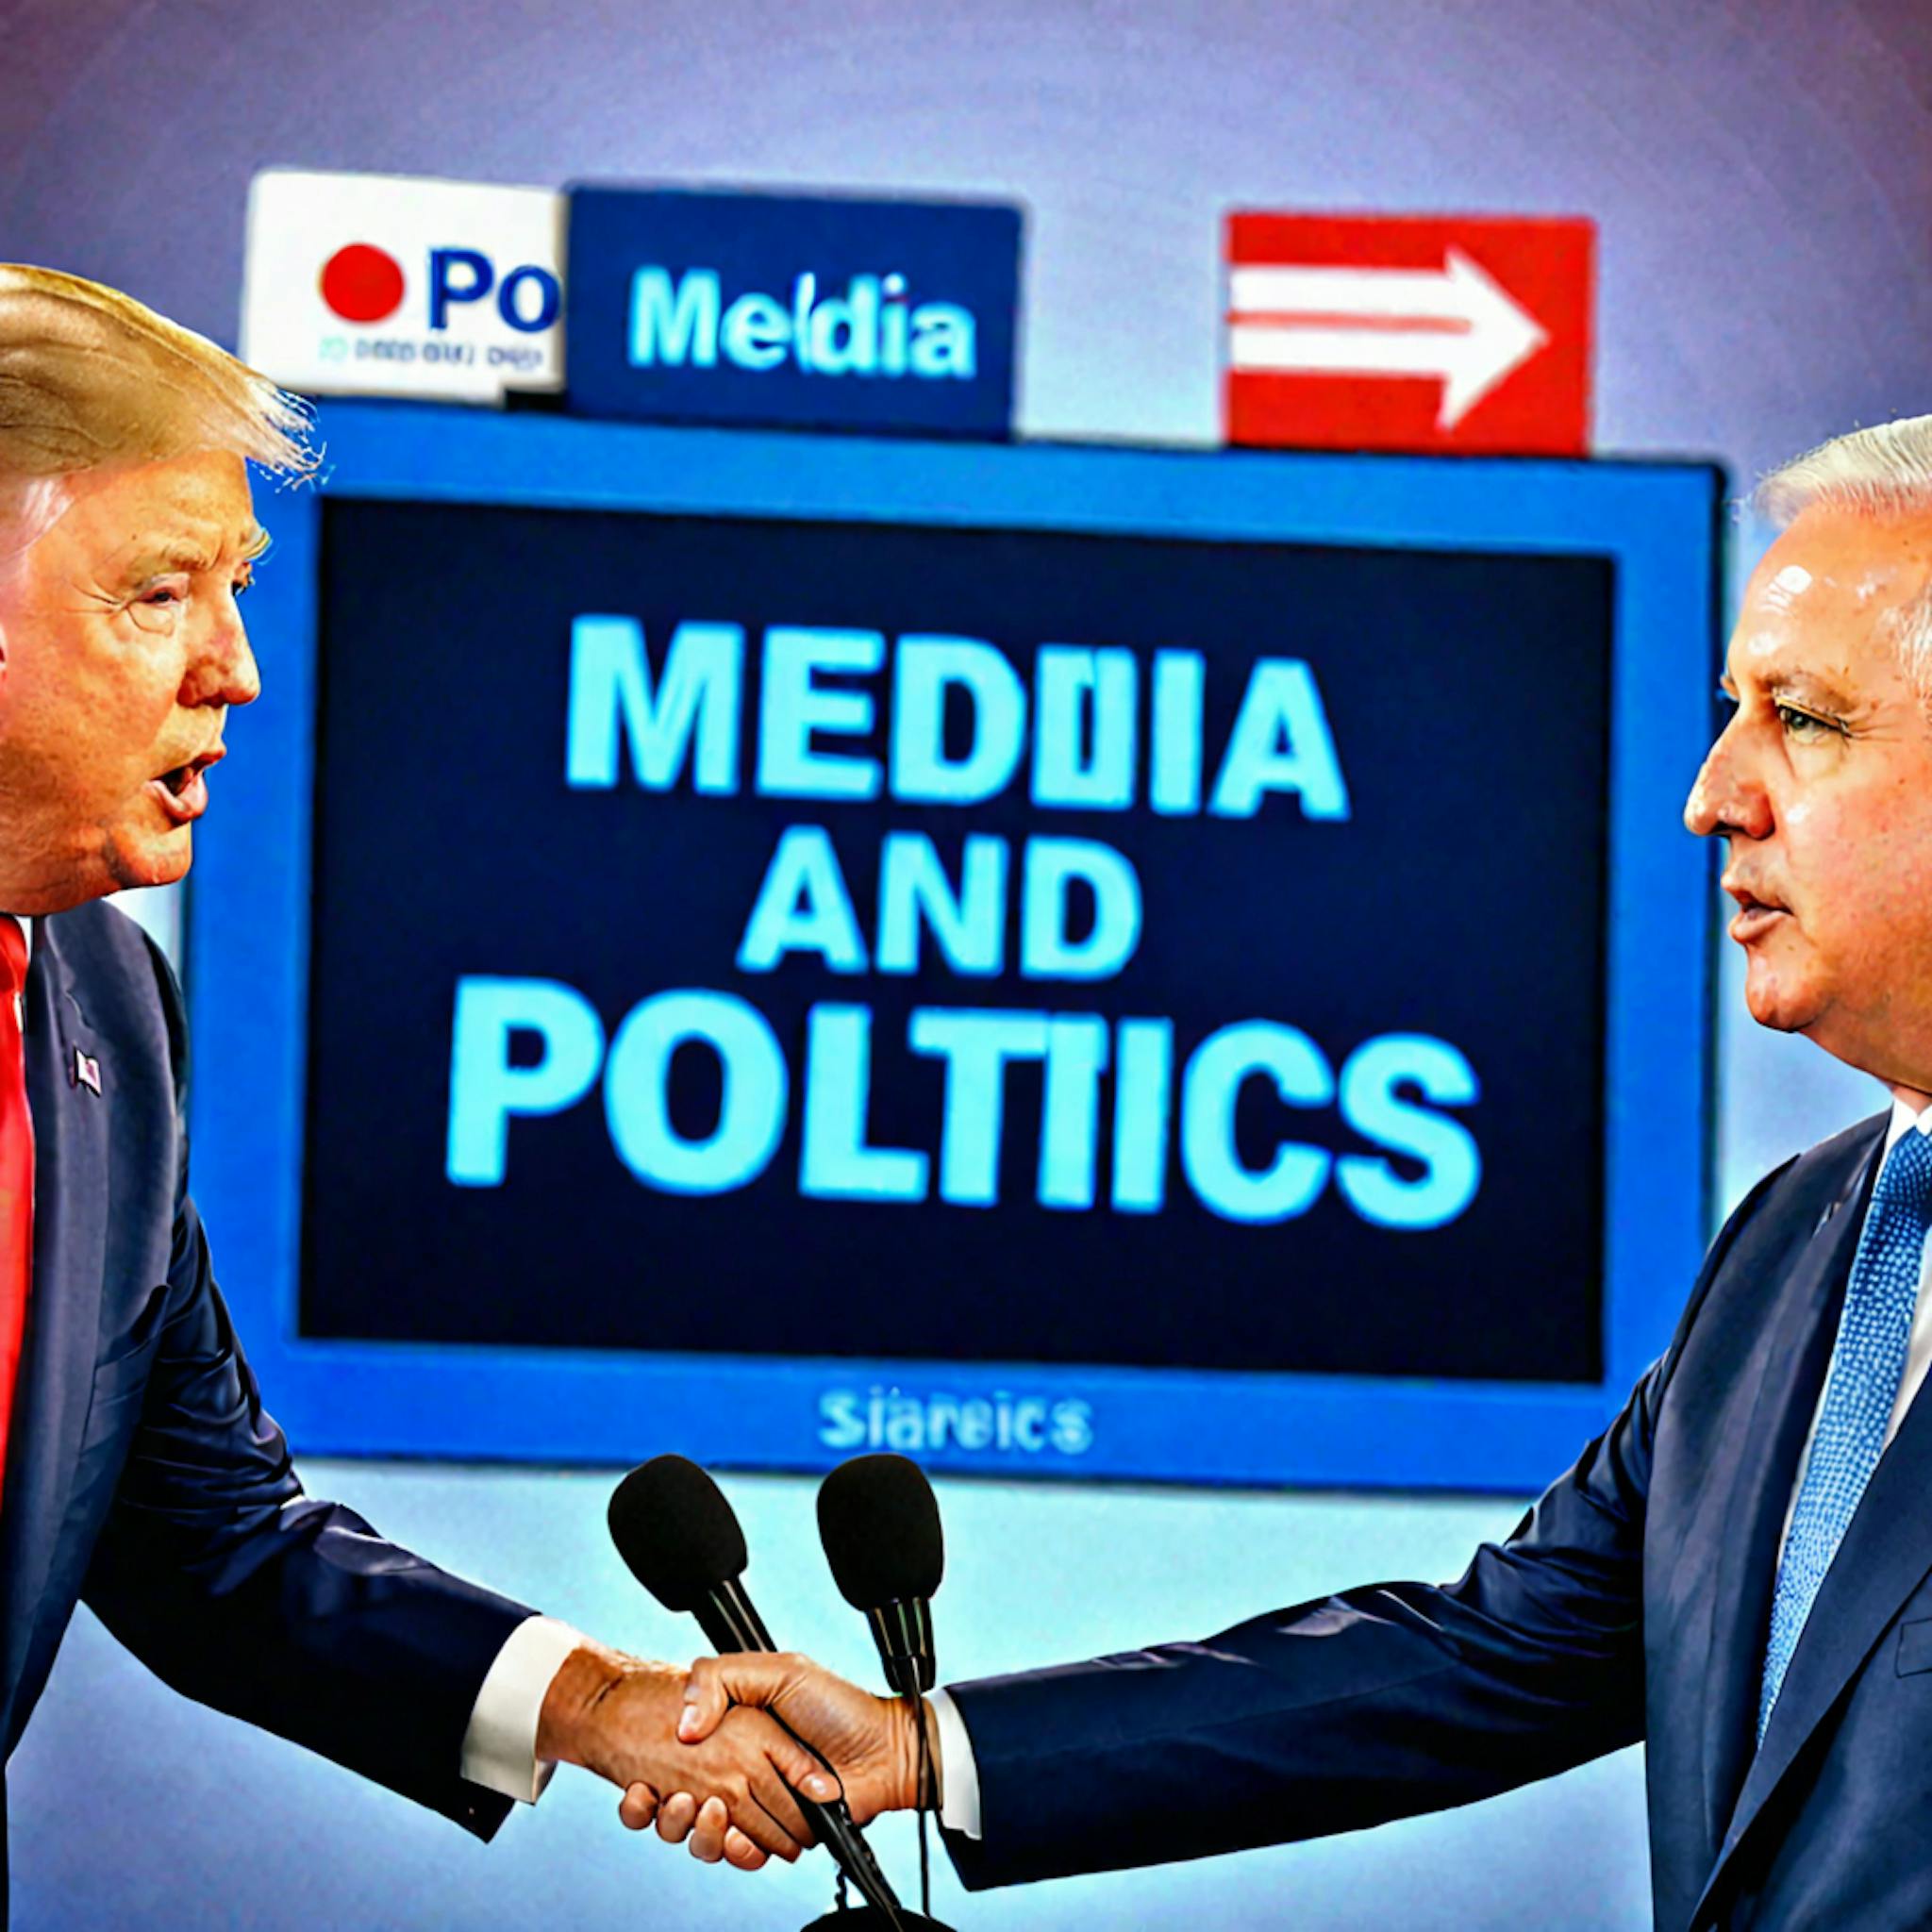 featured image - Clasificación multilingüe de posturas políticas generales de los medios: detalles de la capacitación